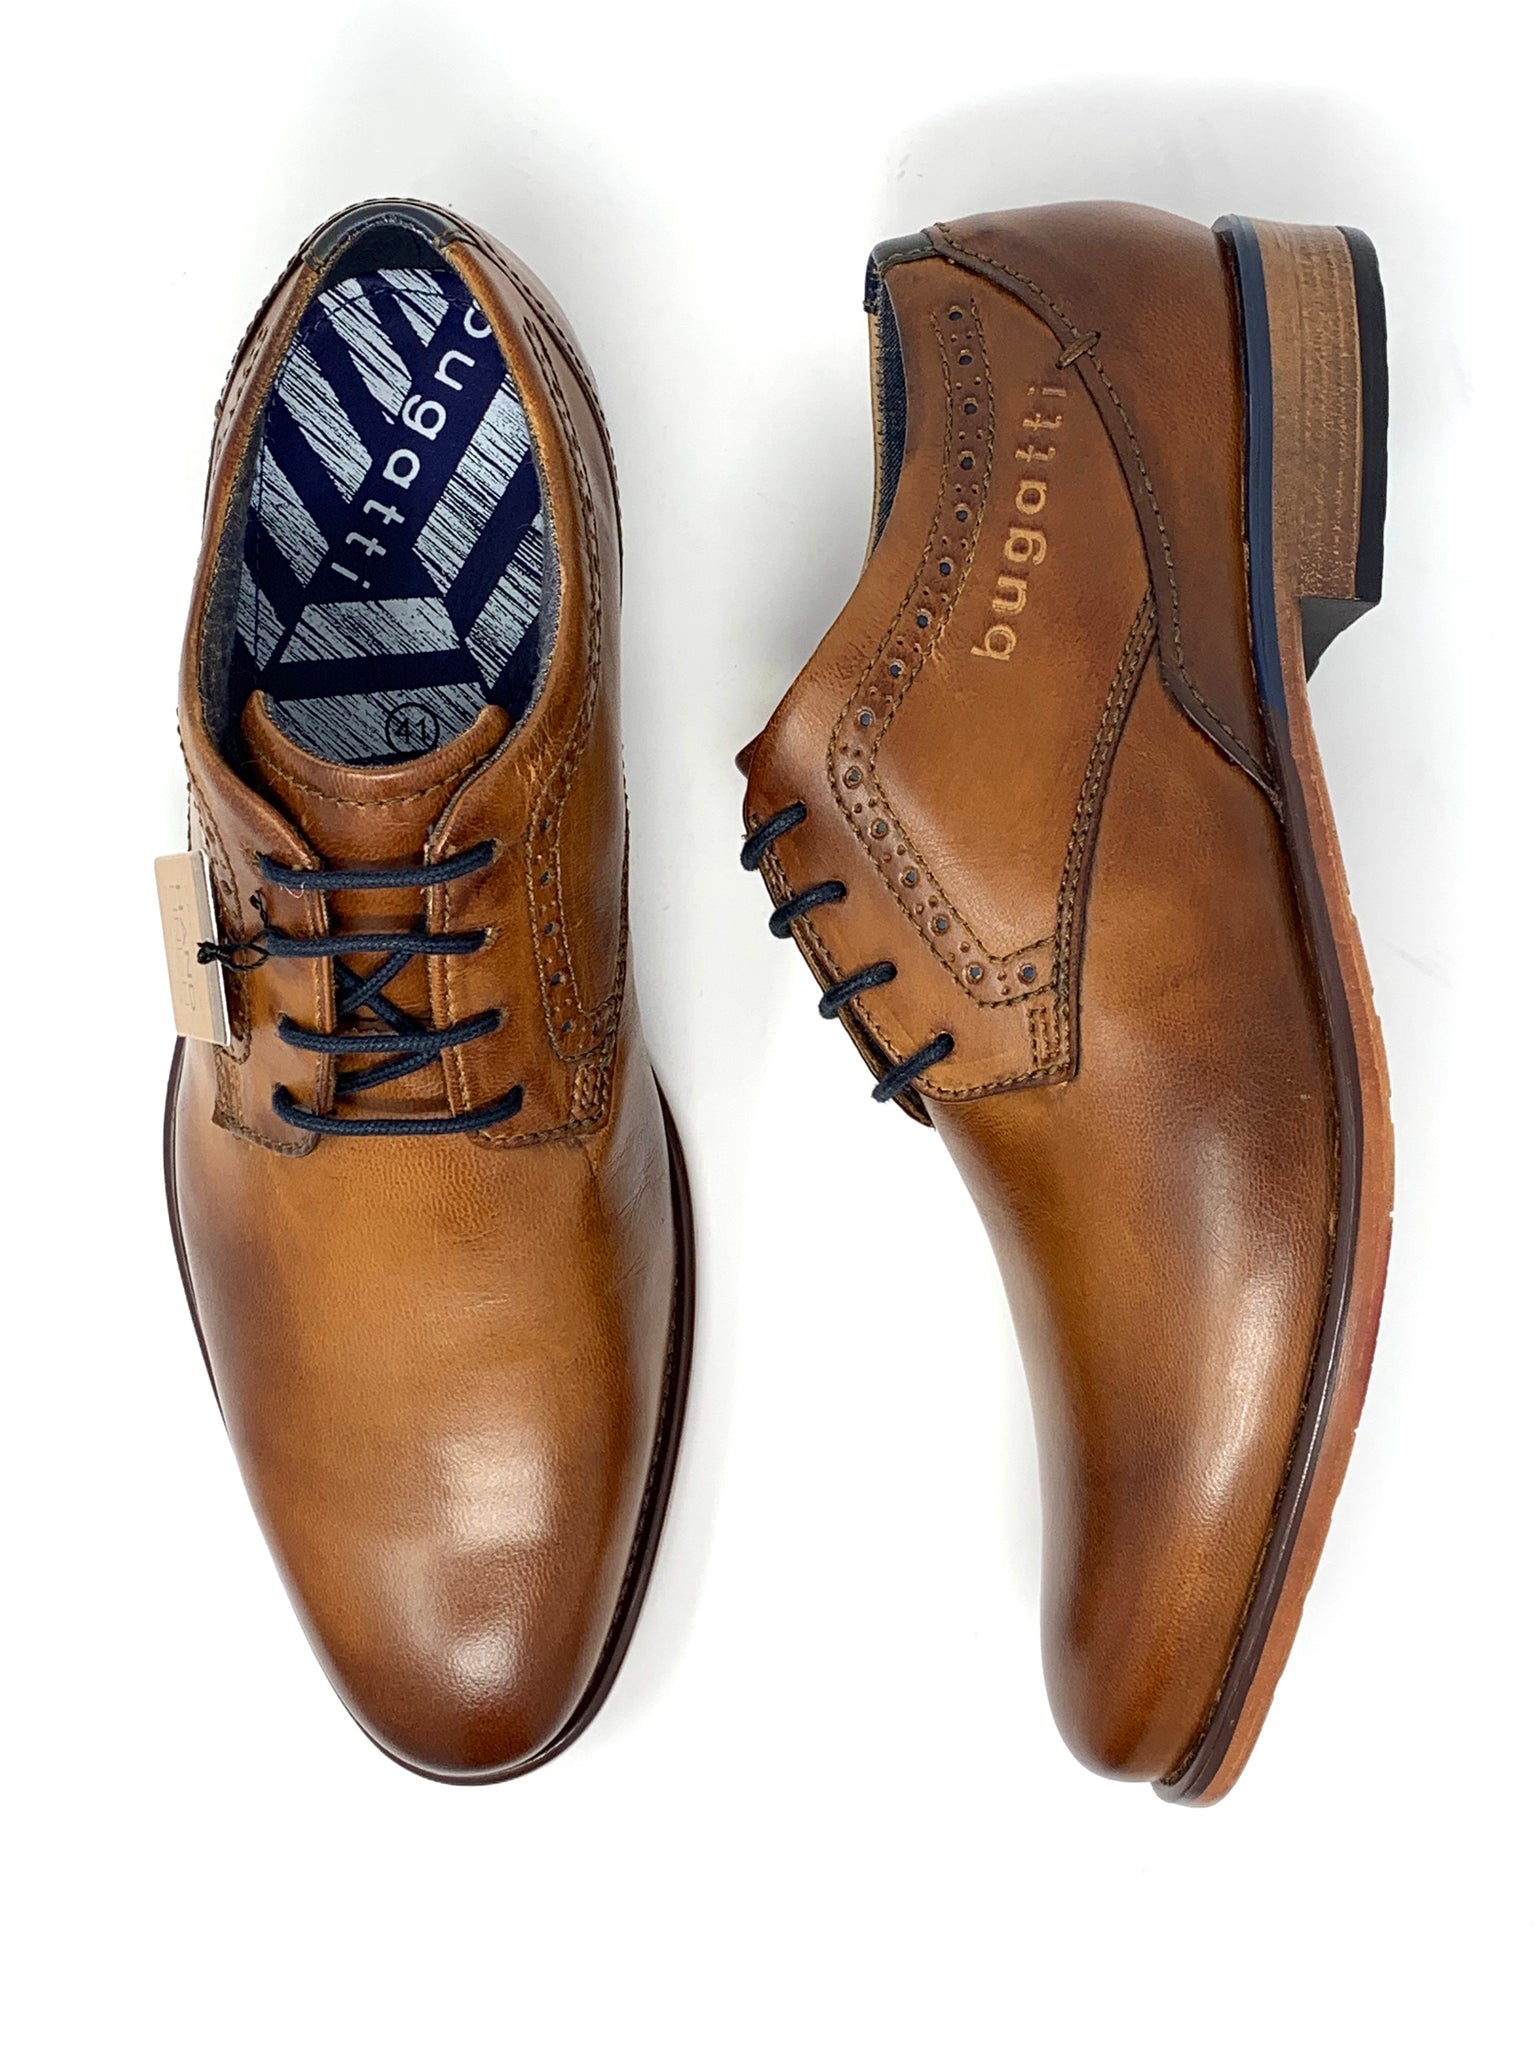 bugatti shoes online